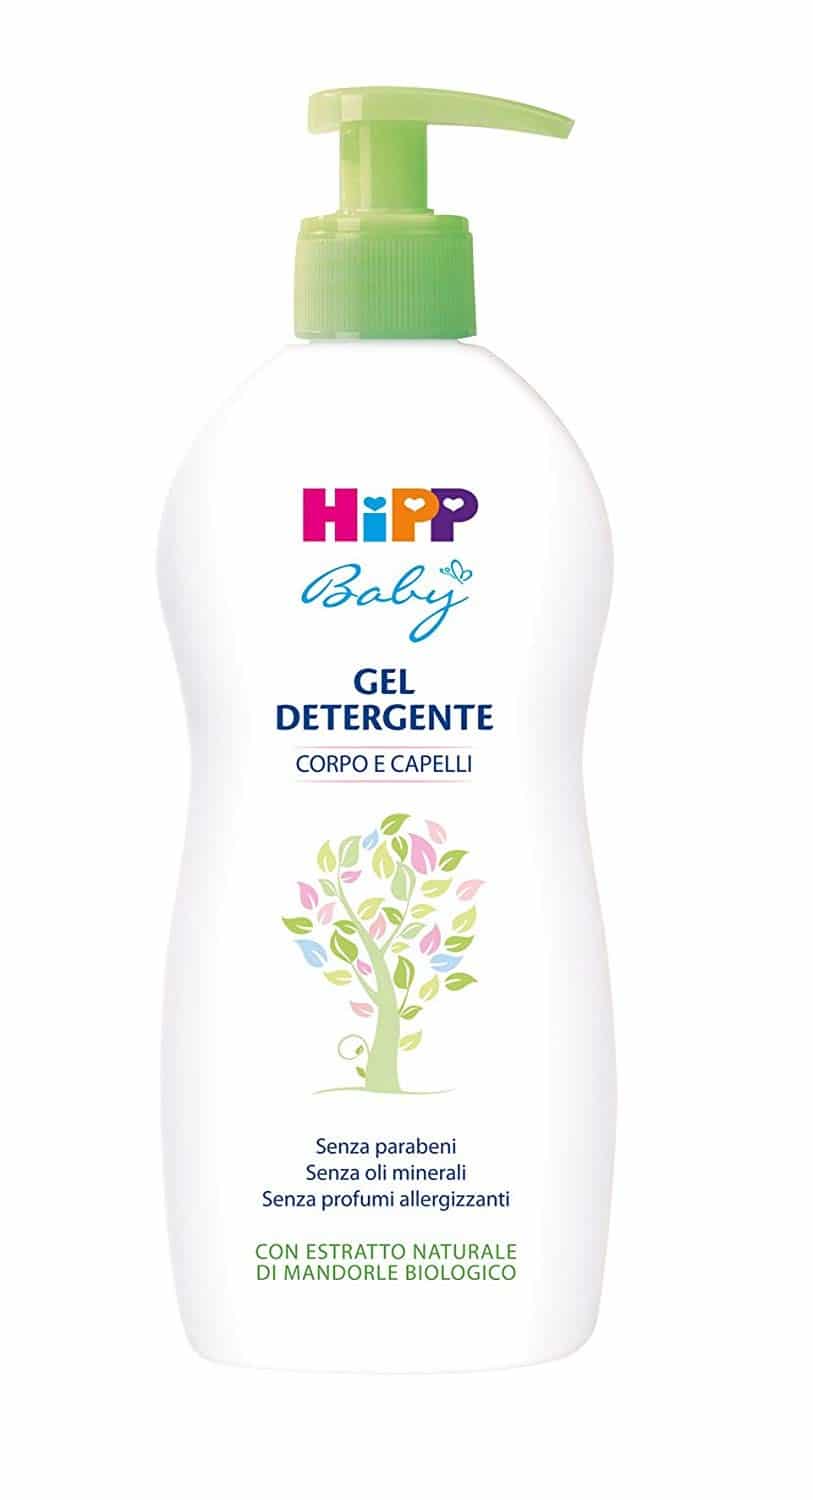 gel detergente corpo e capelli Hipp